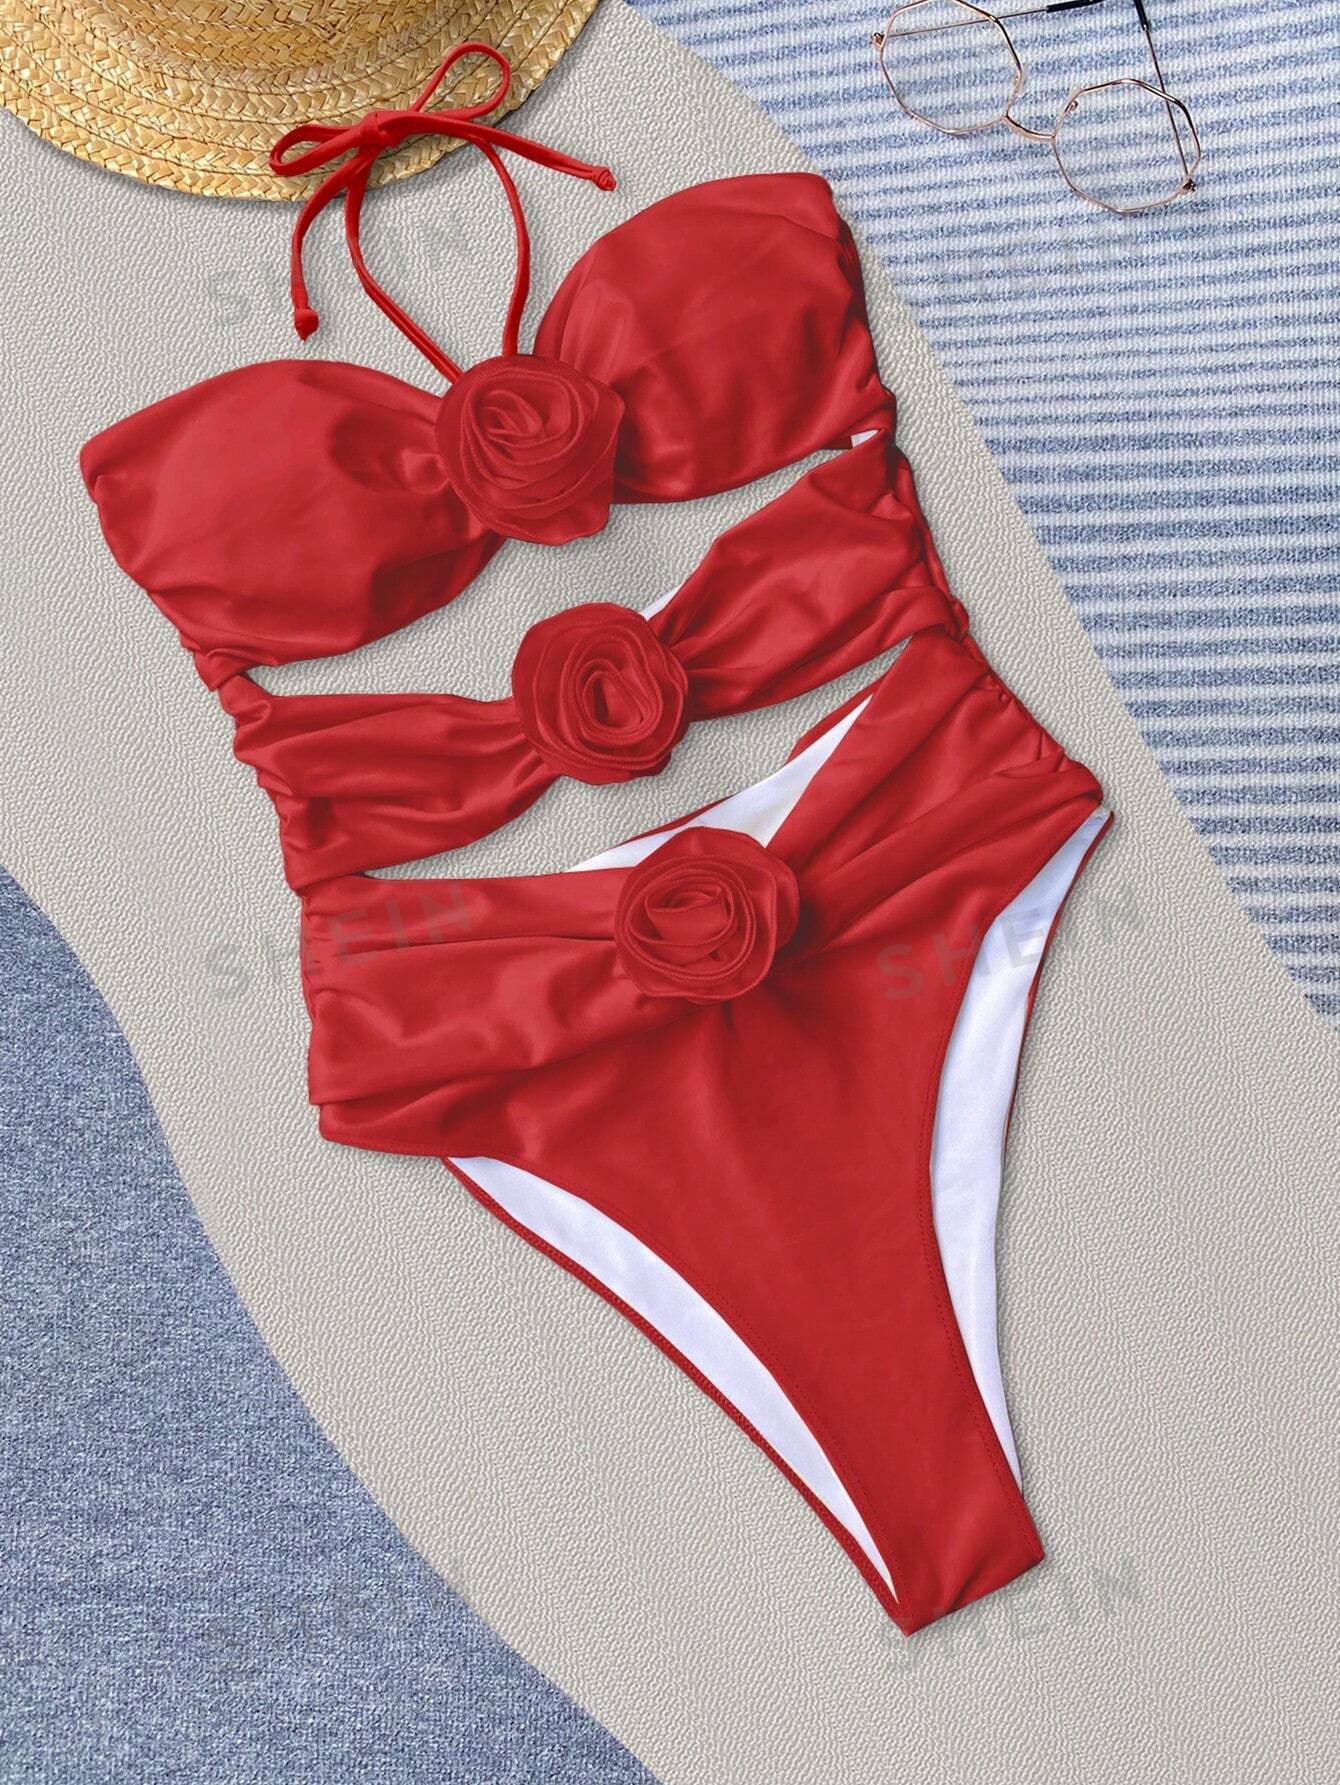 Bikinx сплошной цвет сексуальный ажурный купальник монокини с 3d цветочными деталями и вырезом на шее для женщин, красный сплошной купальник в полоску с бретелькой на шее shoshanna красный